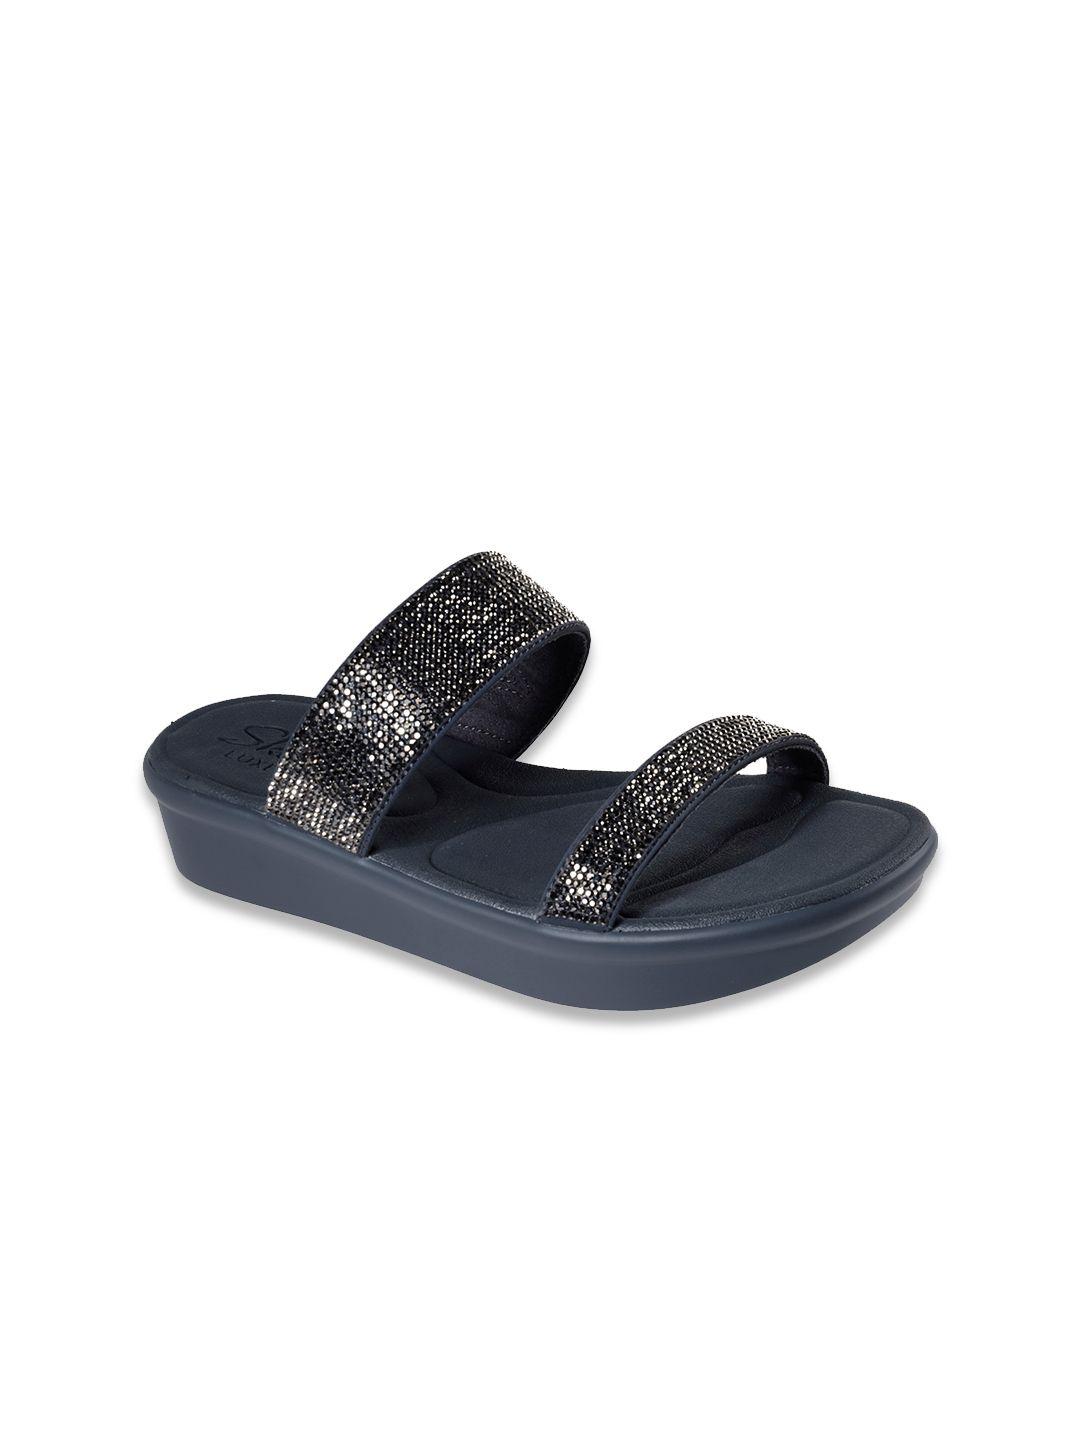 skechers-charcoal-grey-embellished-flatform-heels